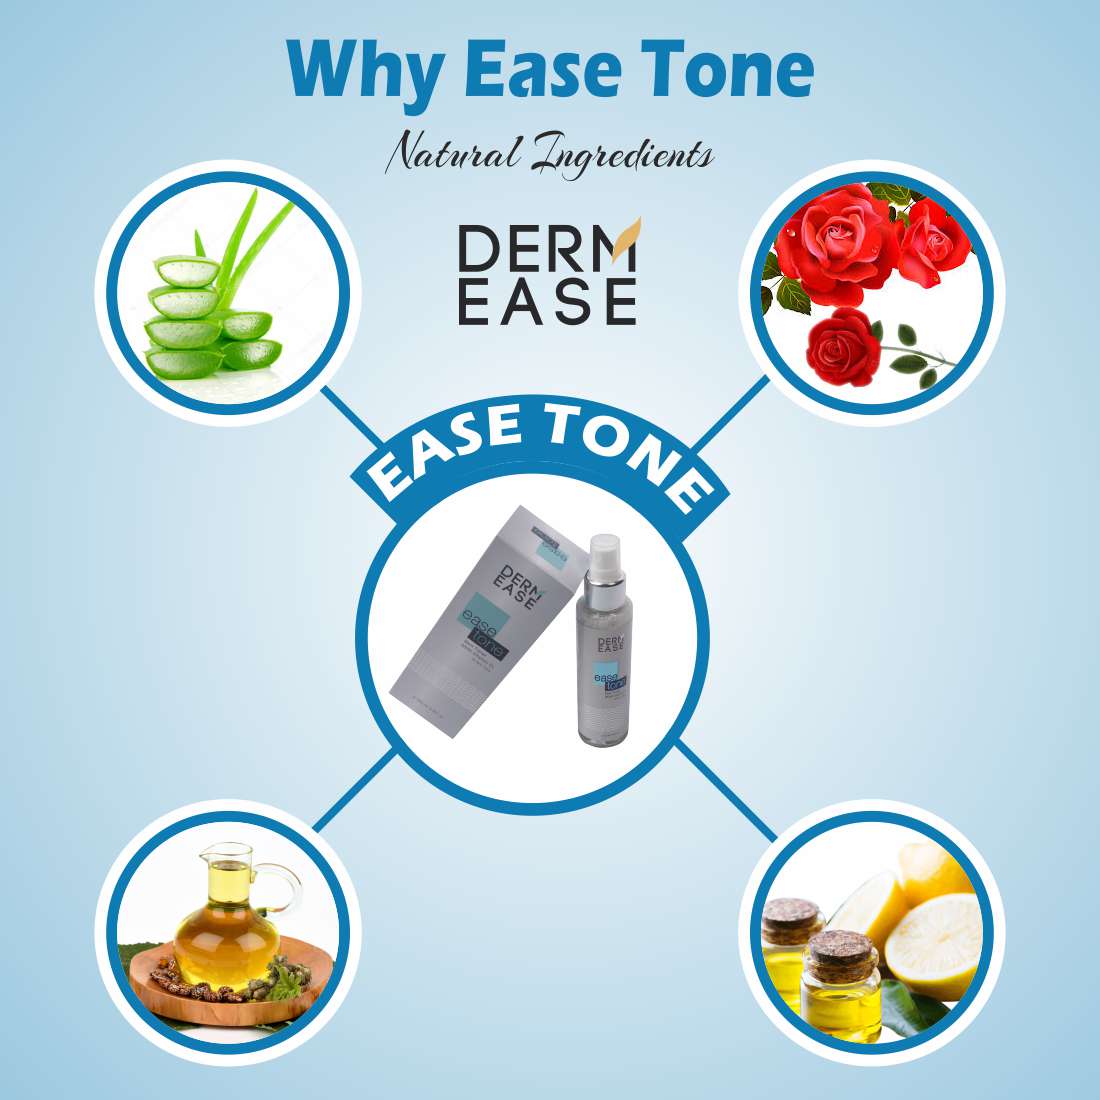 DERM EASE Ease Tone Skin Toner Combo